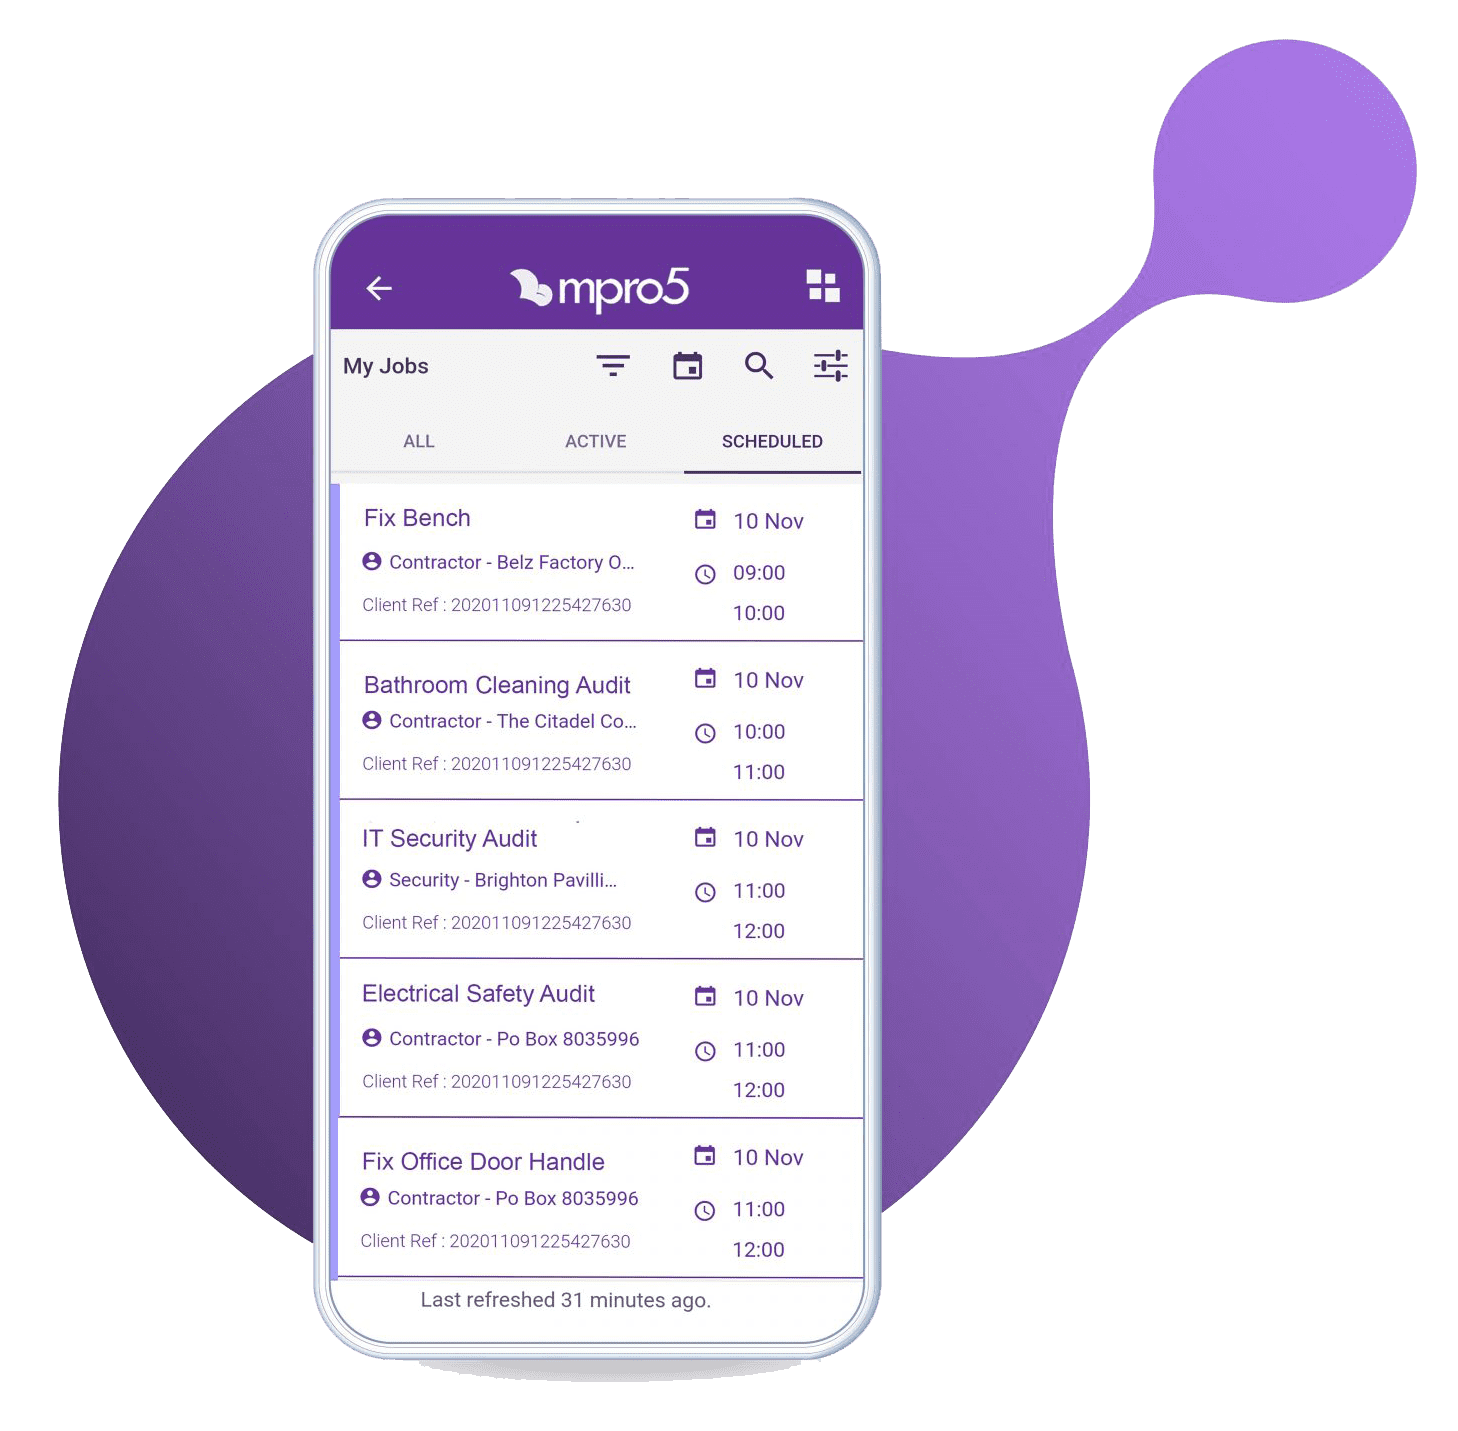 Jobs-List-Purple-Blob-Background-mpro5-1536x1536-copy (3)